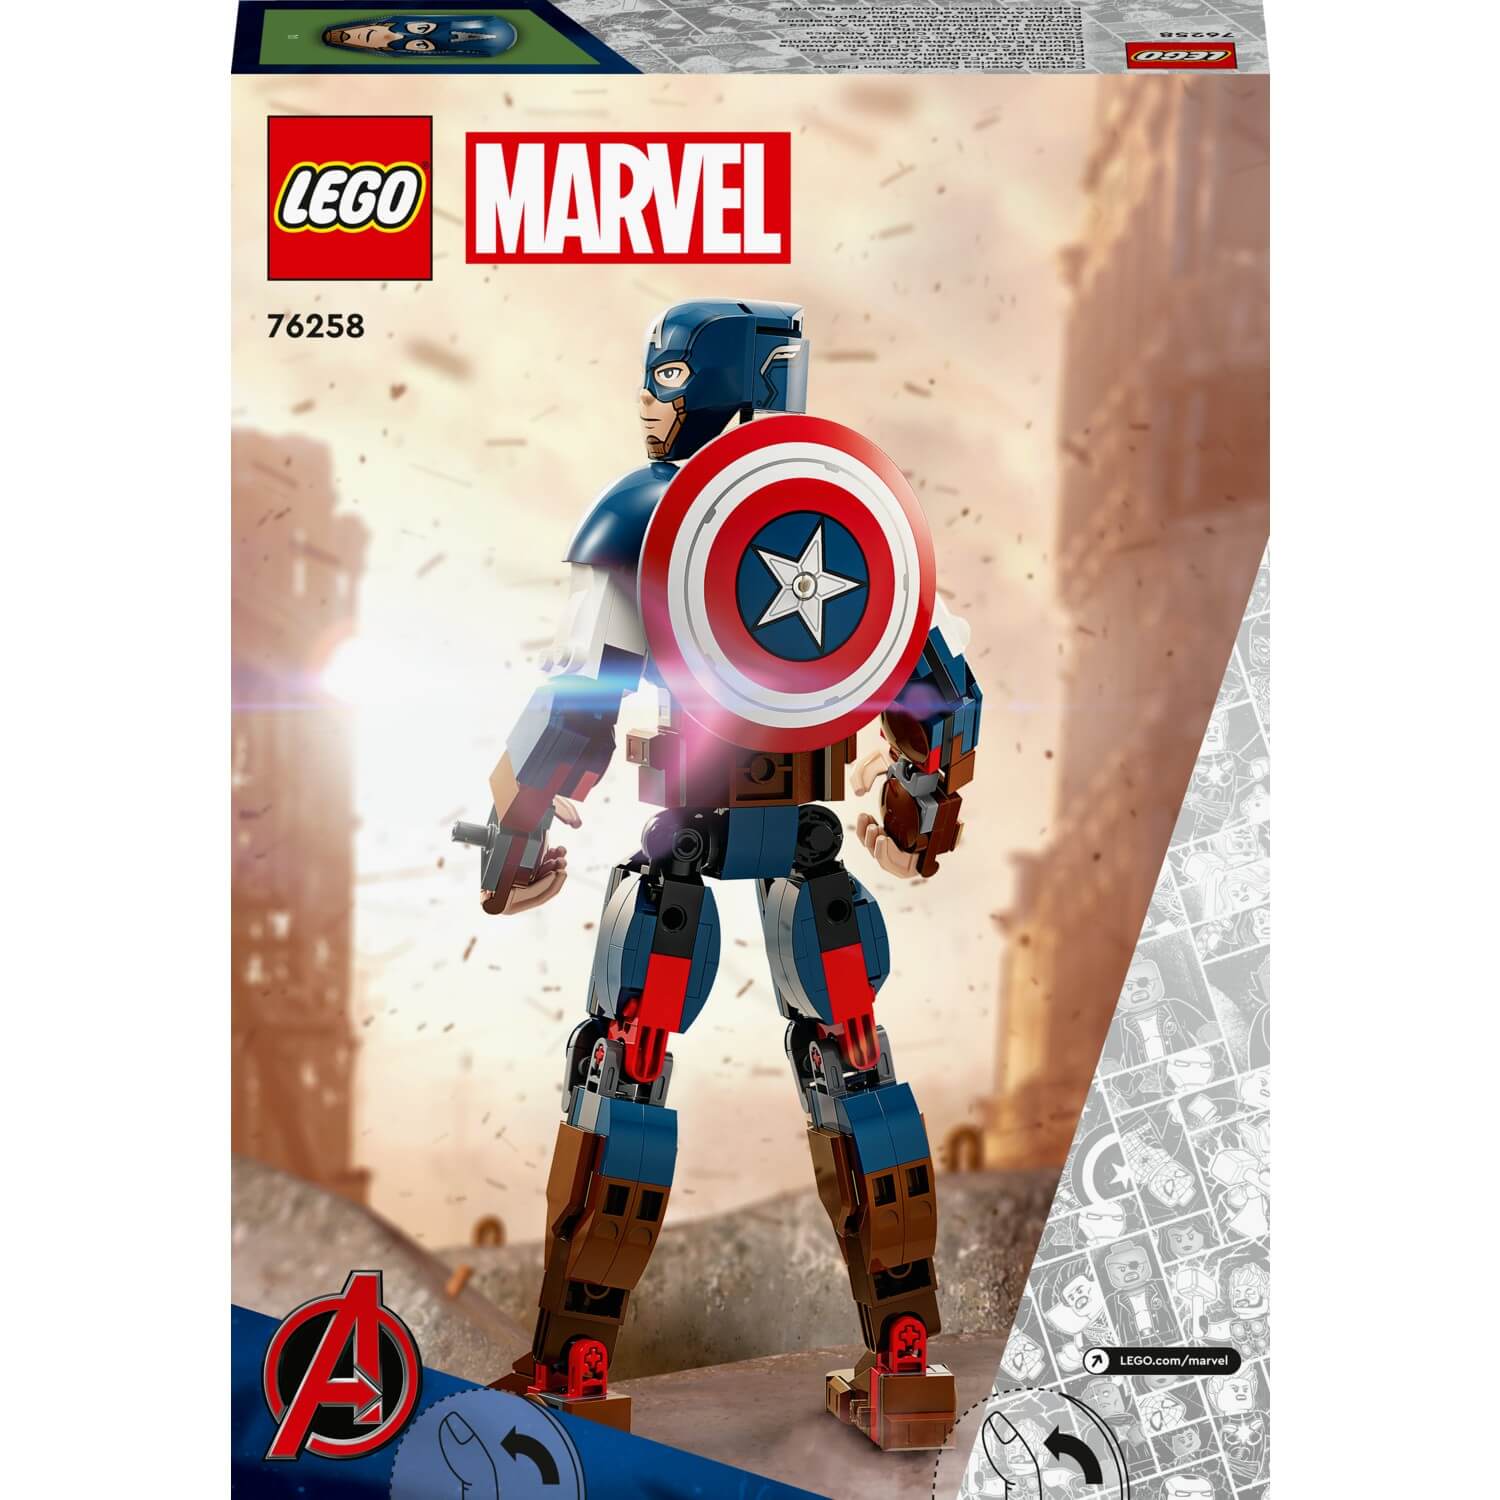 фигурка neca marvel капитан америка 61390 15 см Конструктор Lego 76258 Marvel Капитан Америка, 310 деталей